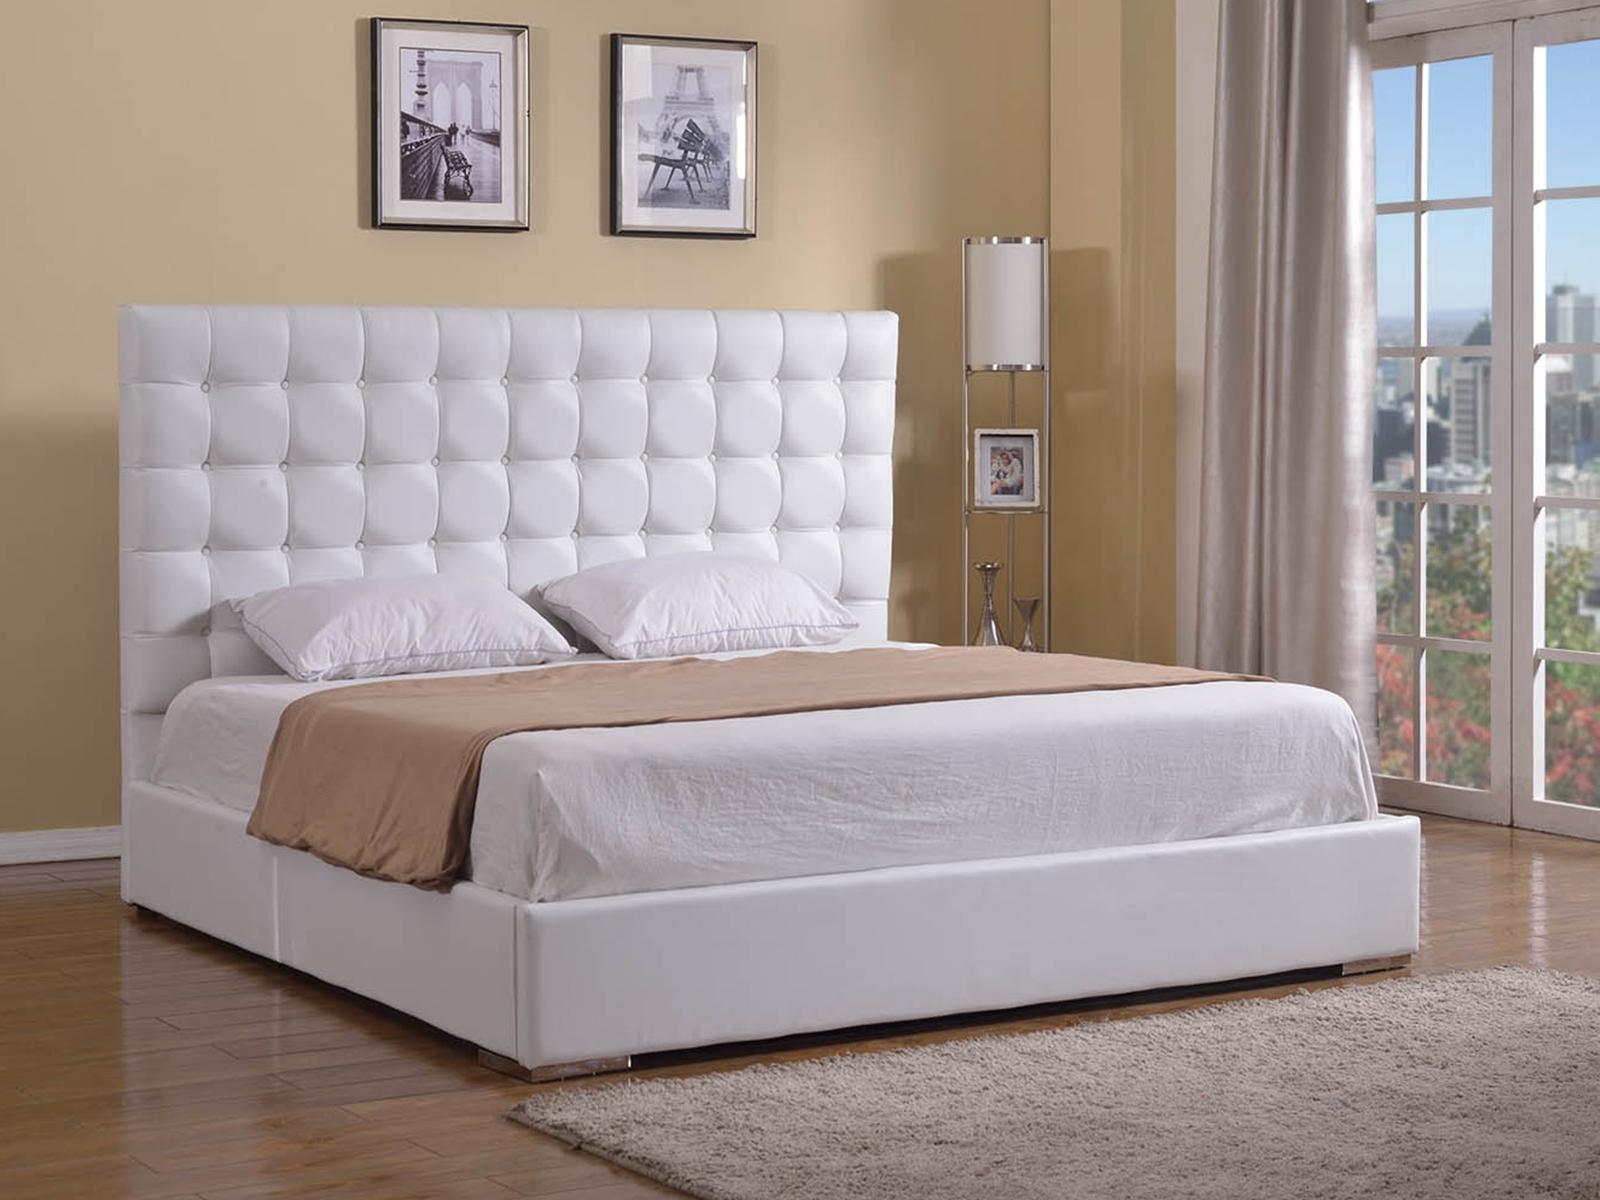 

    
Casabianca BELLA Modern White Eco-Leather Upholstered King Size Platform Bed
